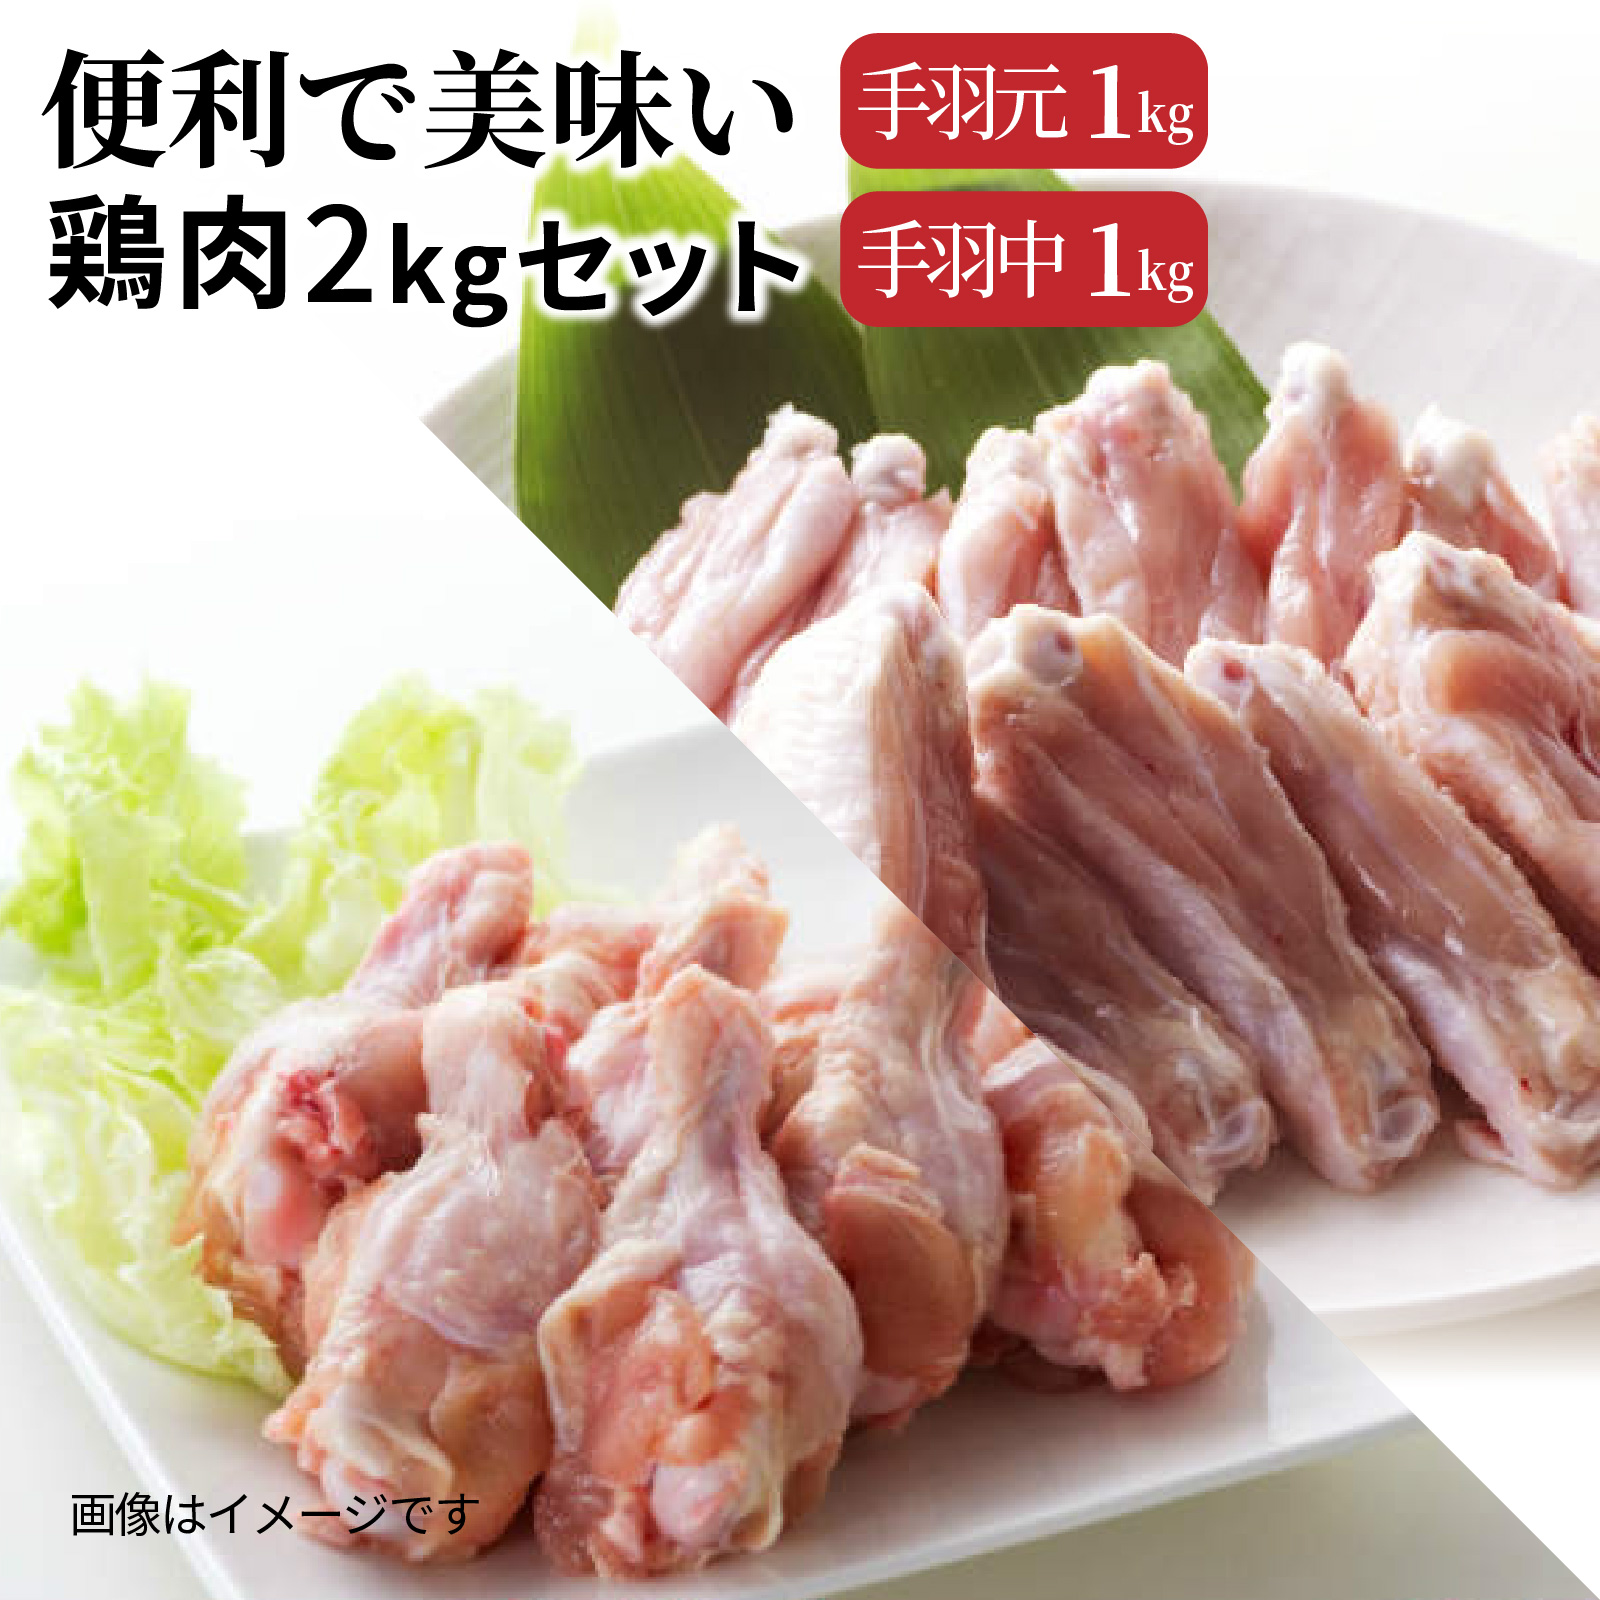 便利で美味い鶏肉2kgセット/手羽元,手羽中を各1kg